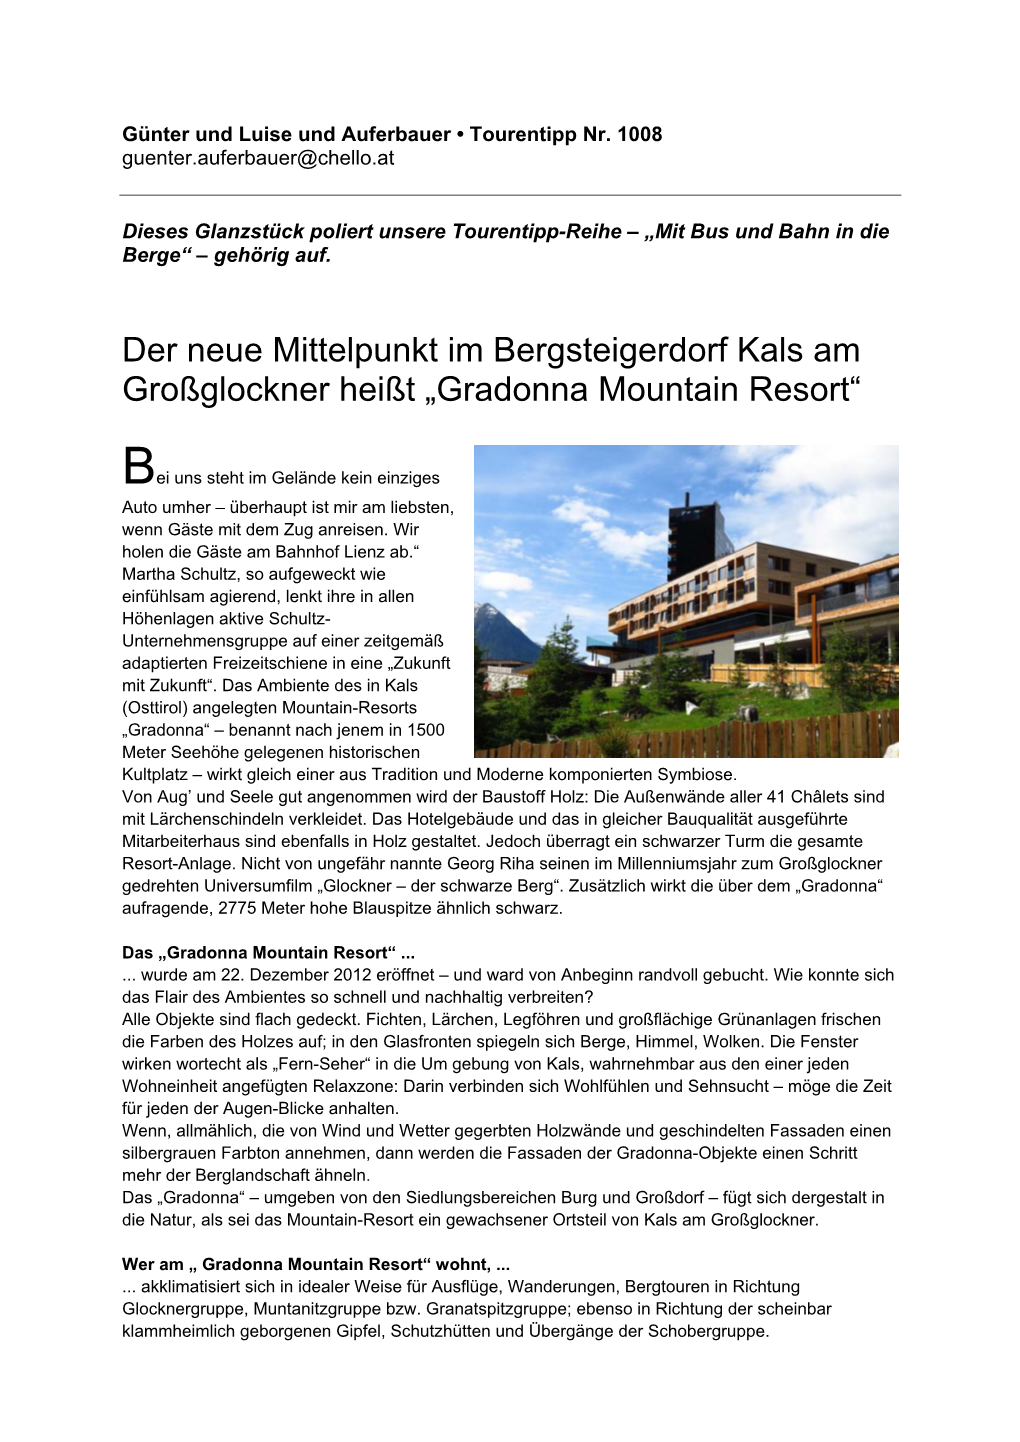 Der Neue Mittelpunkt Im Bergsteigerdorf Kals Am Großglockner Heißt „Gradonna Mountain Resort“